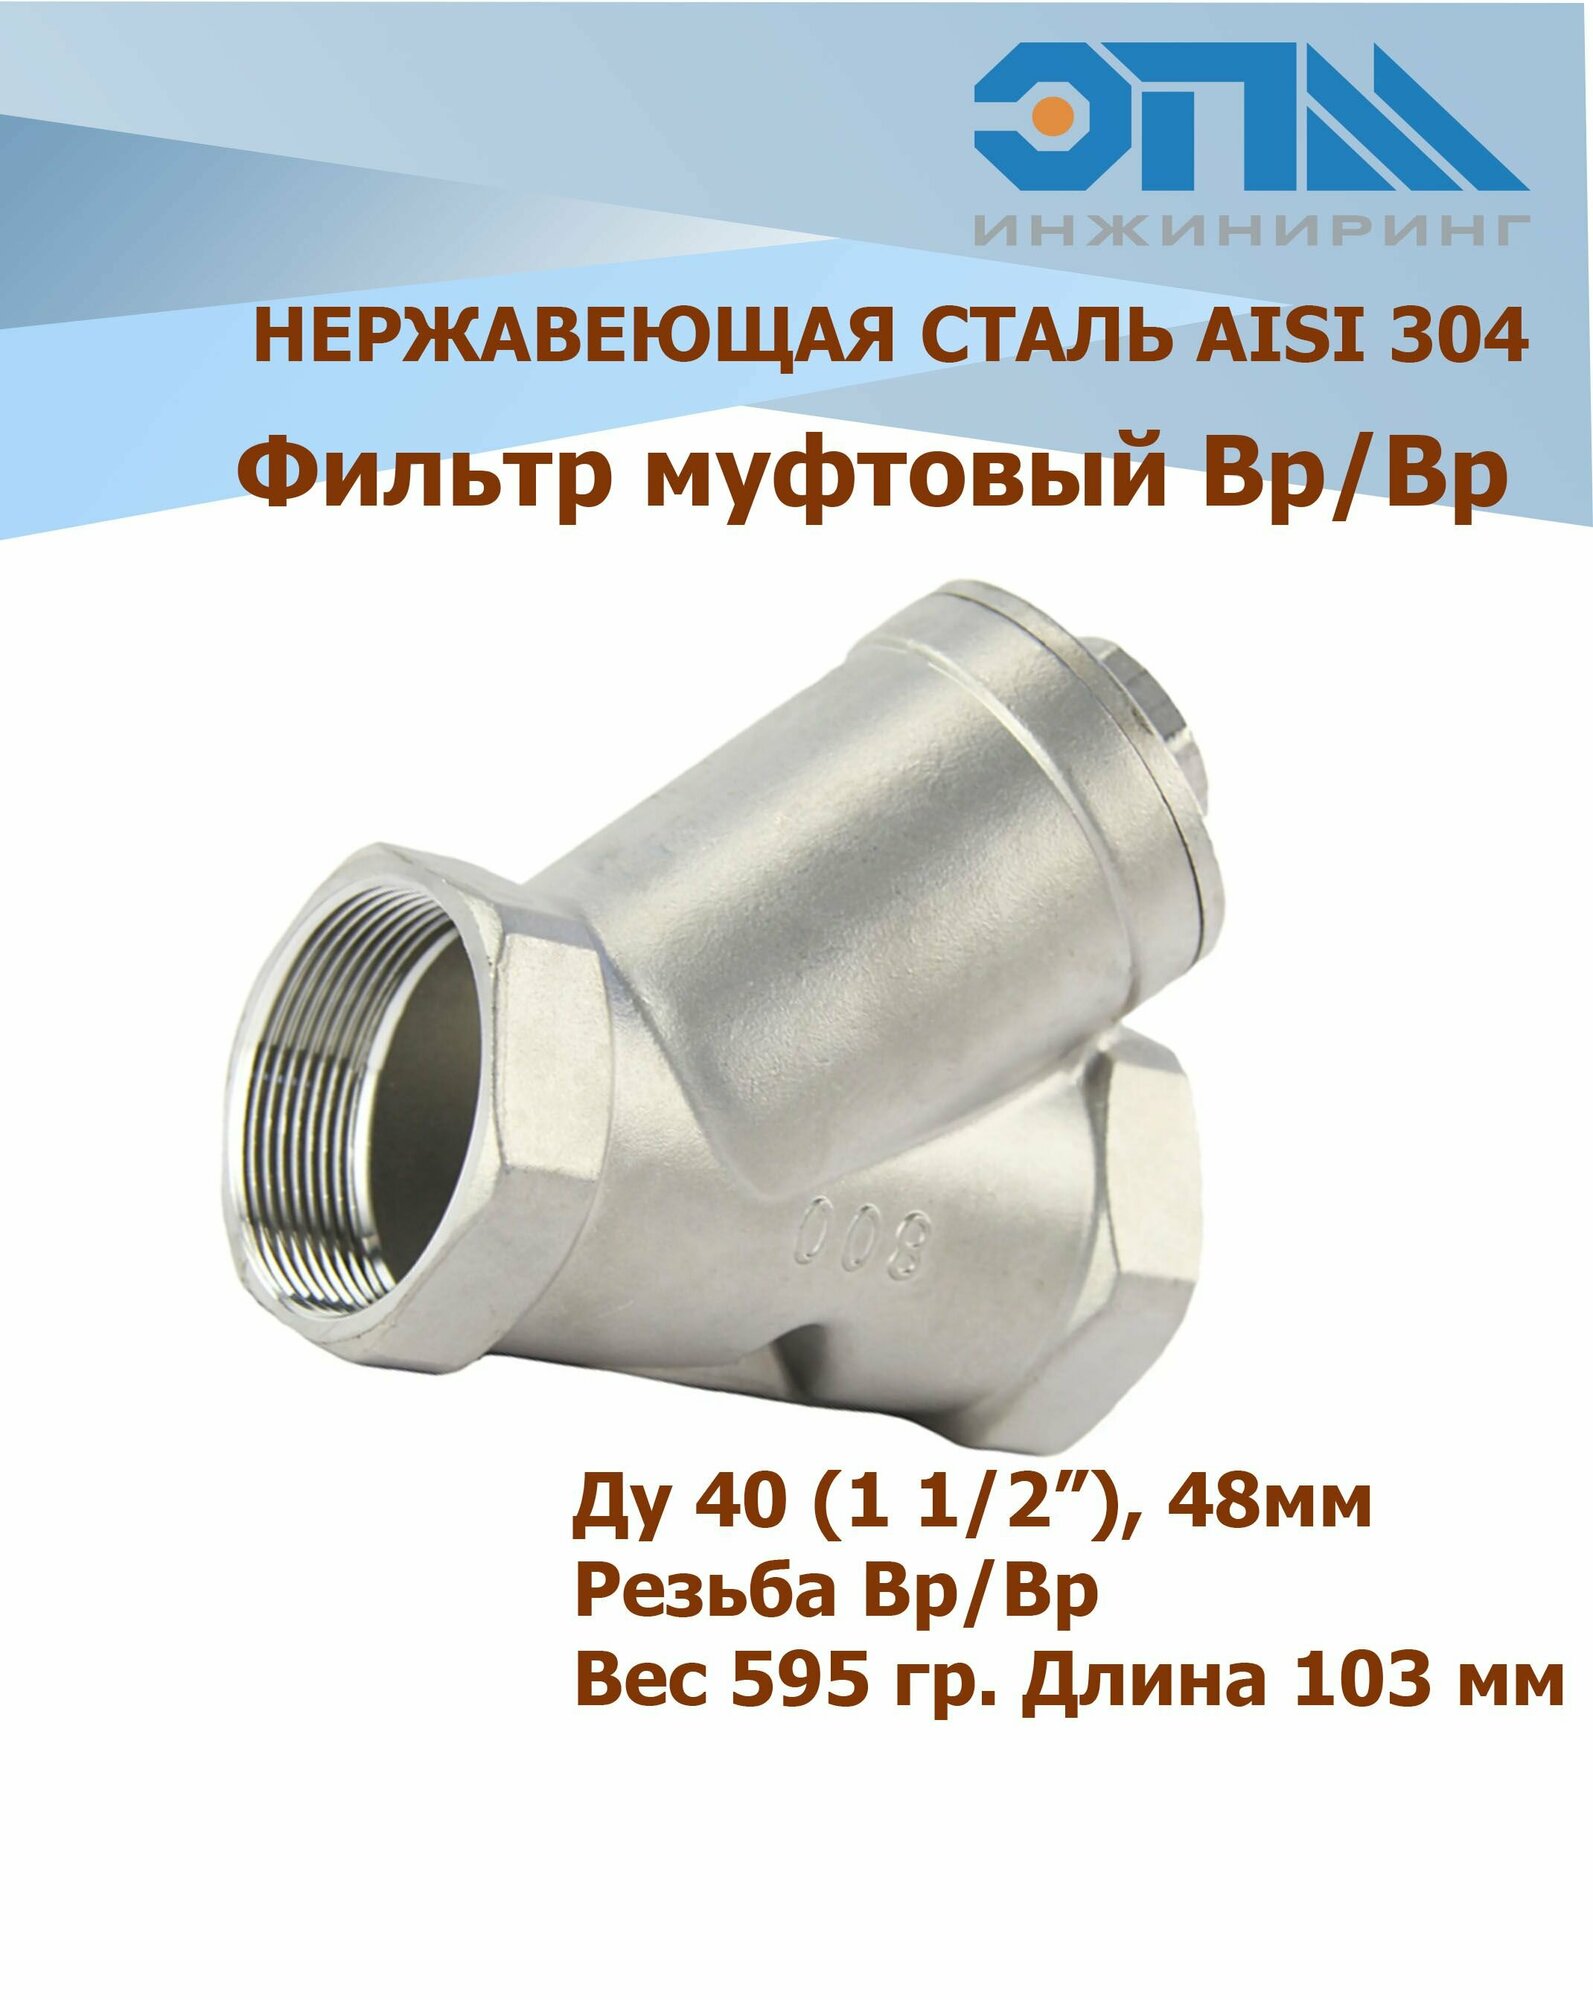 Фильтр нержавеющий Вр/Вр Ду 40 (1_1/2" 48 мм) AISI 304 косой резьбовой У-образный